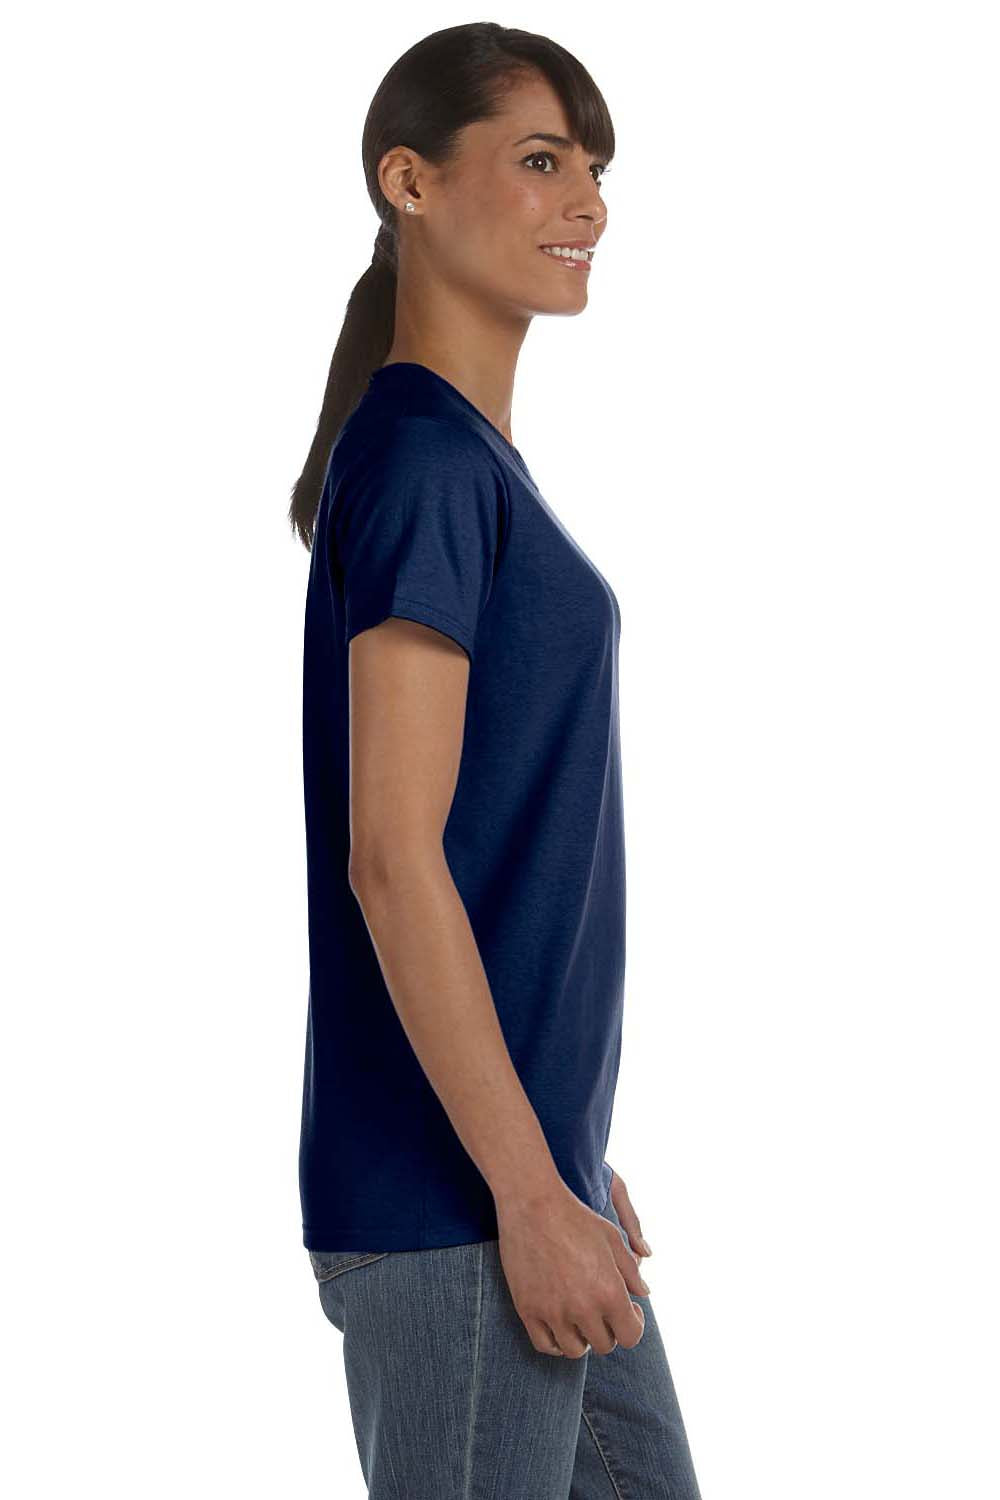 Gildan G500L Womens Short Sleeve Crewneck T-Shirt Navy Blue Side